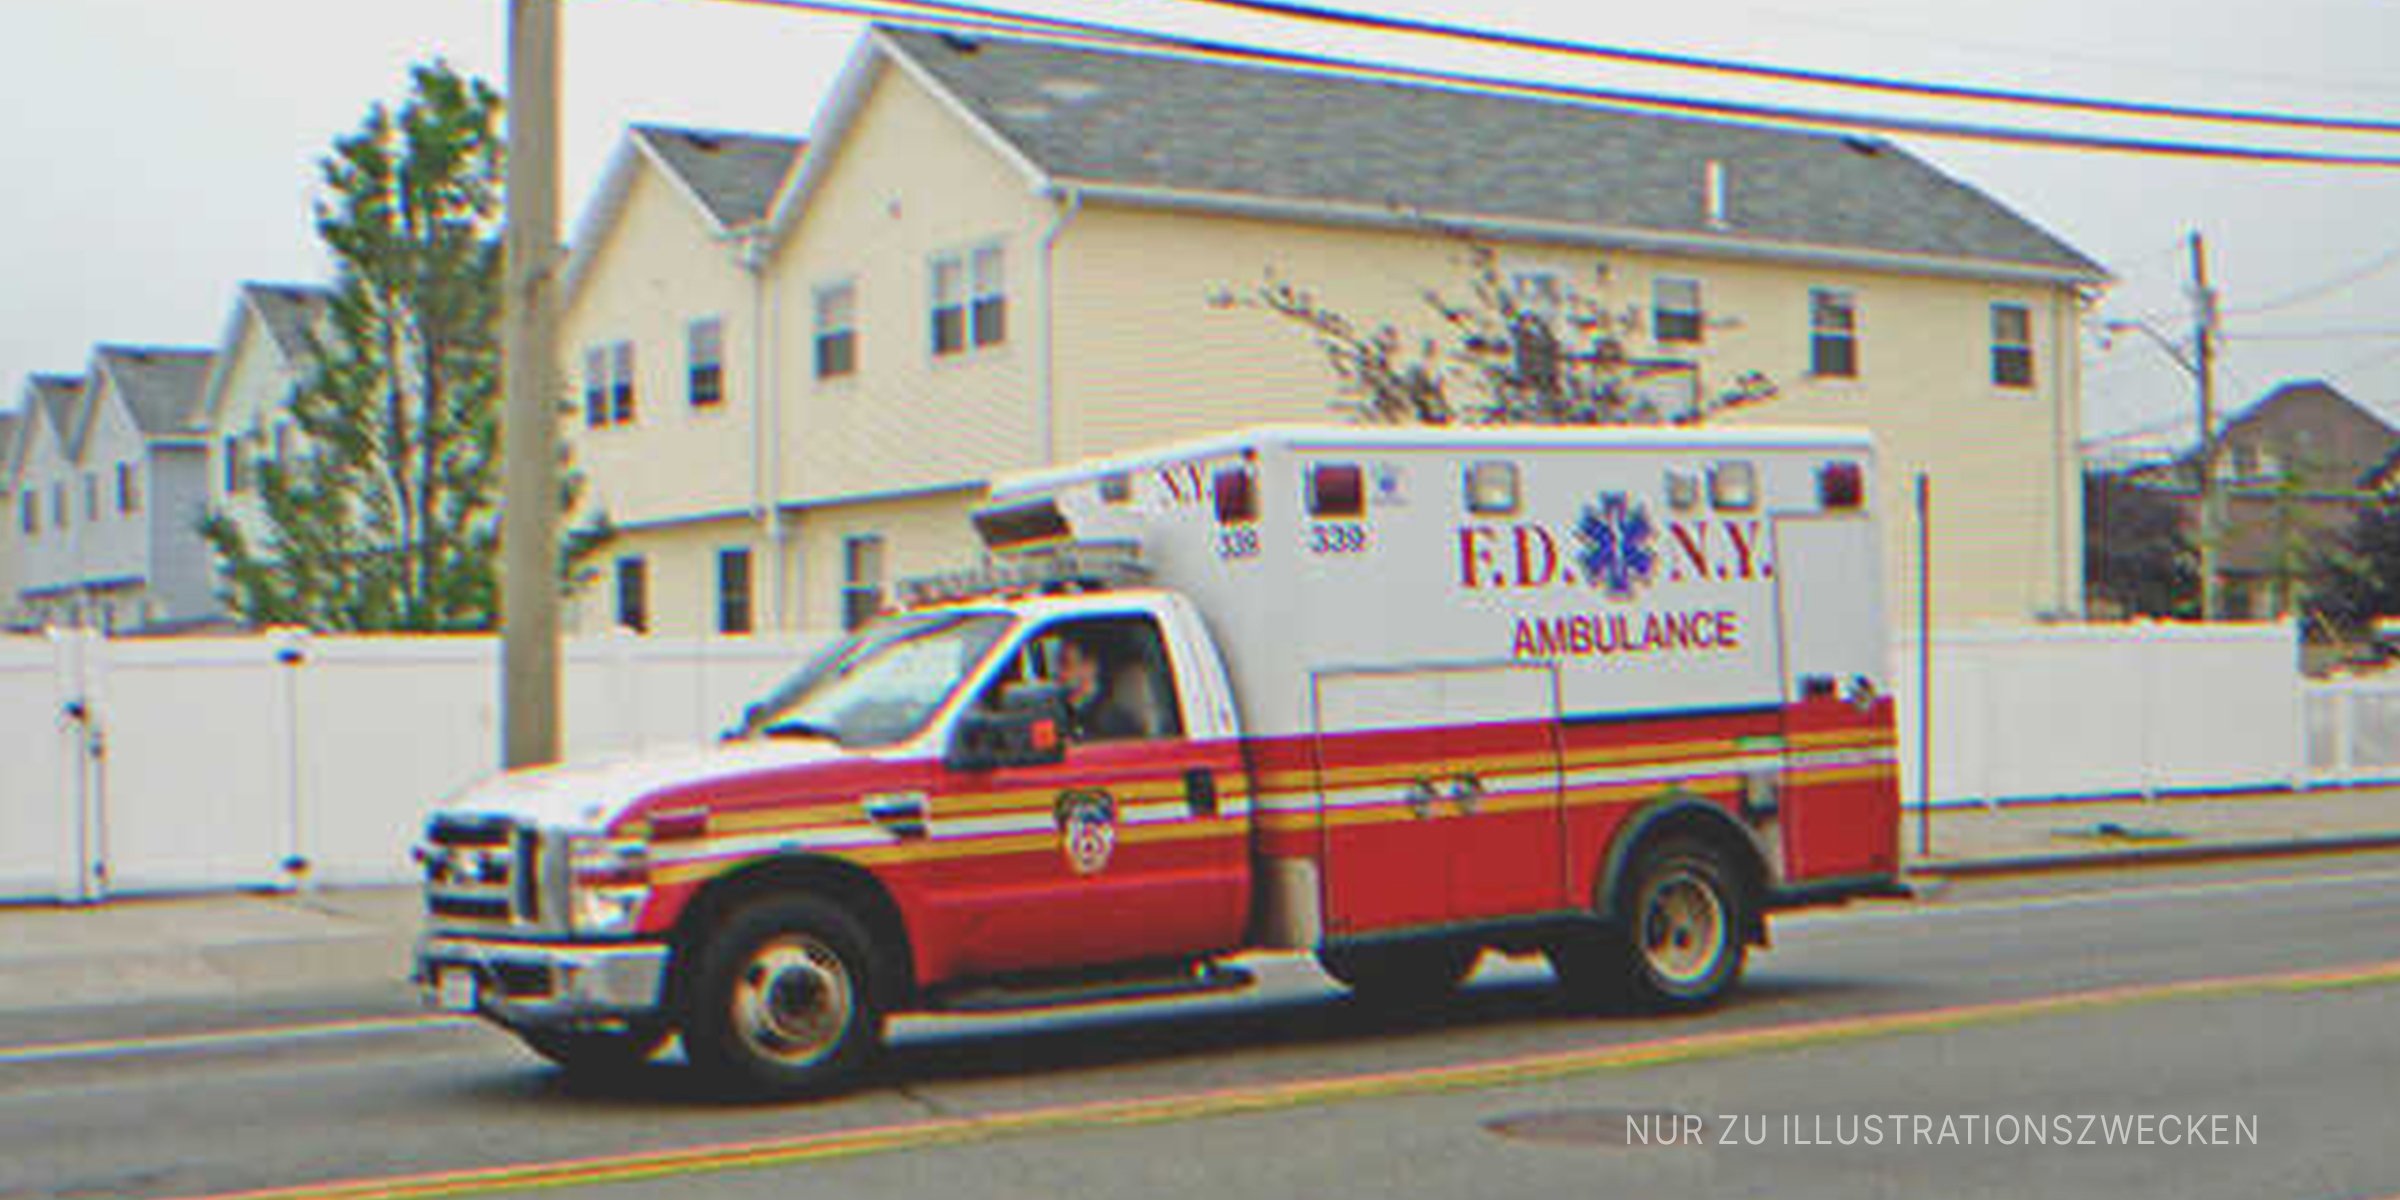 Ein Krankenwagen bringt eine Frau ins Krankenhaus | Quelle: Flickr / JLaw45 (CC BY 2.0)